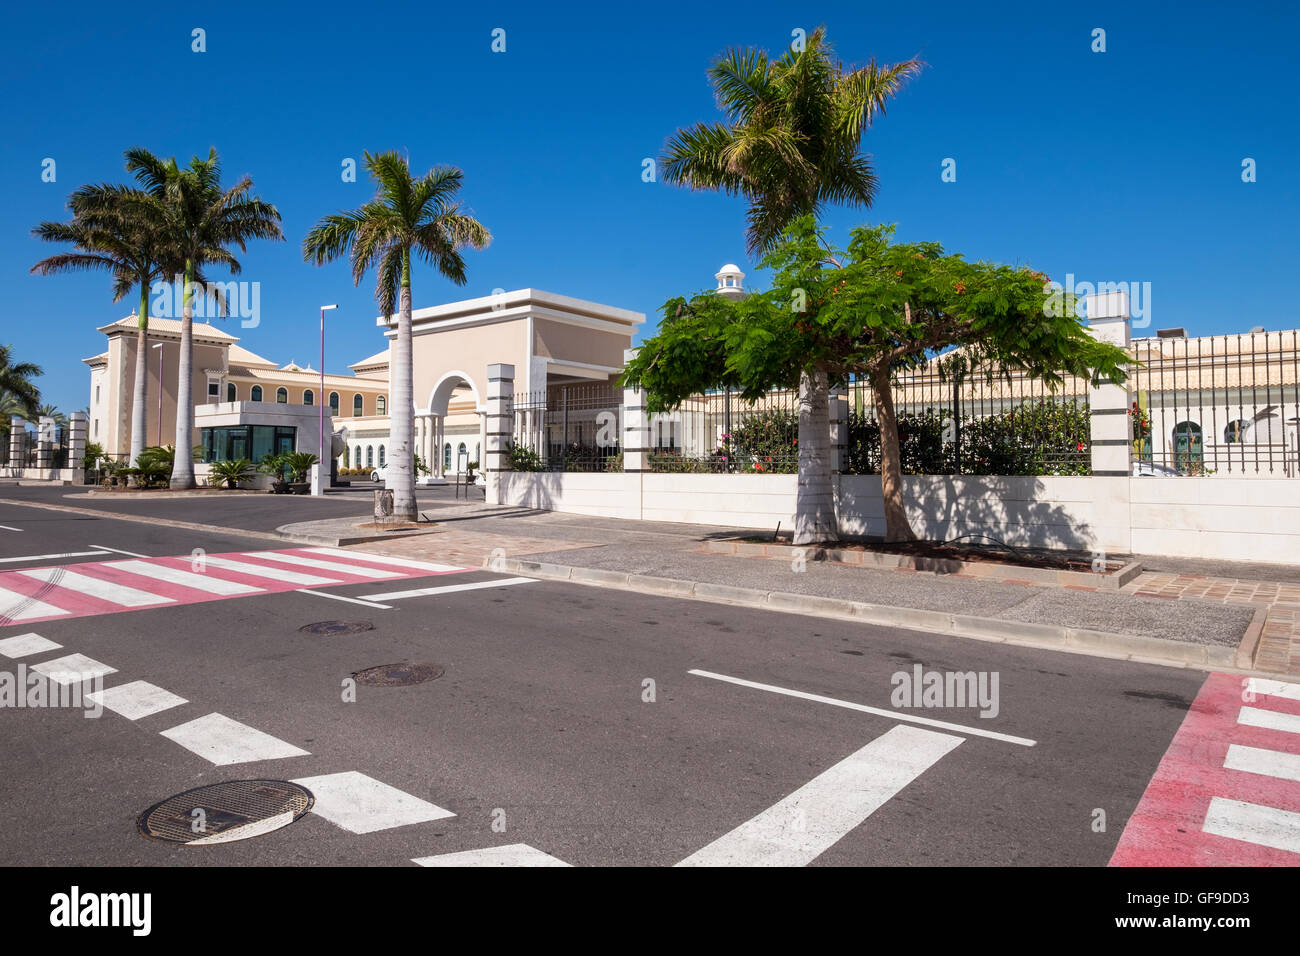 Sol Melia Palacio de Isora hotel a cinque stelle in Alcala, Tenerife, Isole Canarie, Spagna Foto Stock